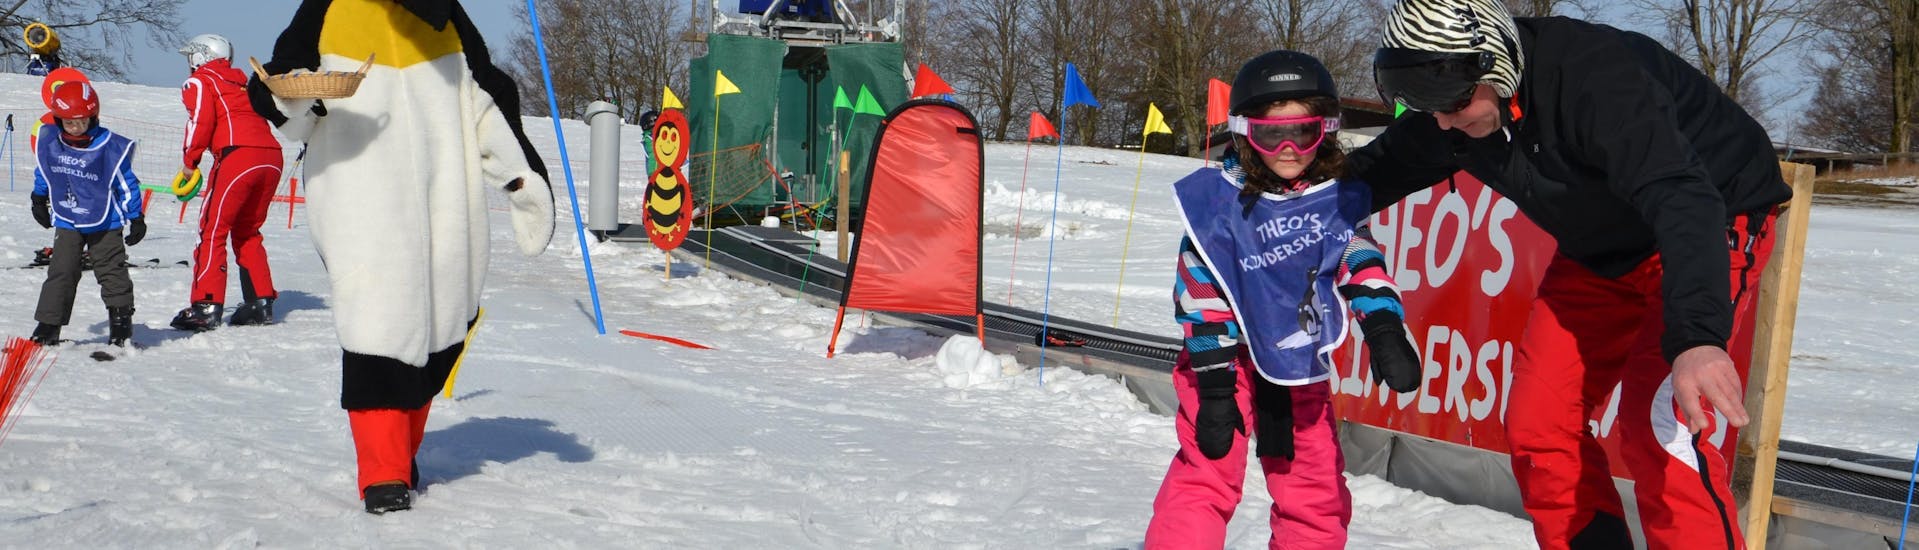 Ein Skilehrer von der Skischule Sahneberg zeigt einem kleinen Mädchen während dem privaten Skikurs für Kinder und Jugendliche für alle Levels einige Übungen.